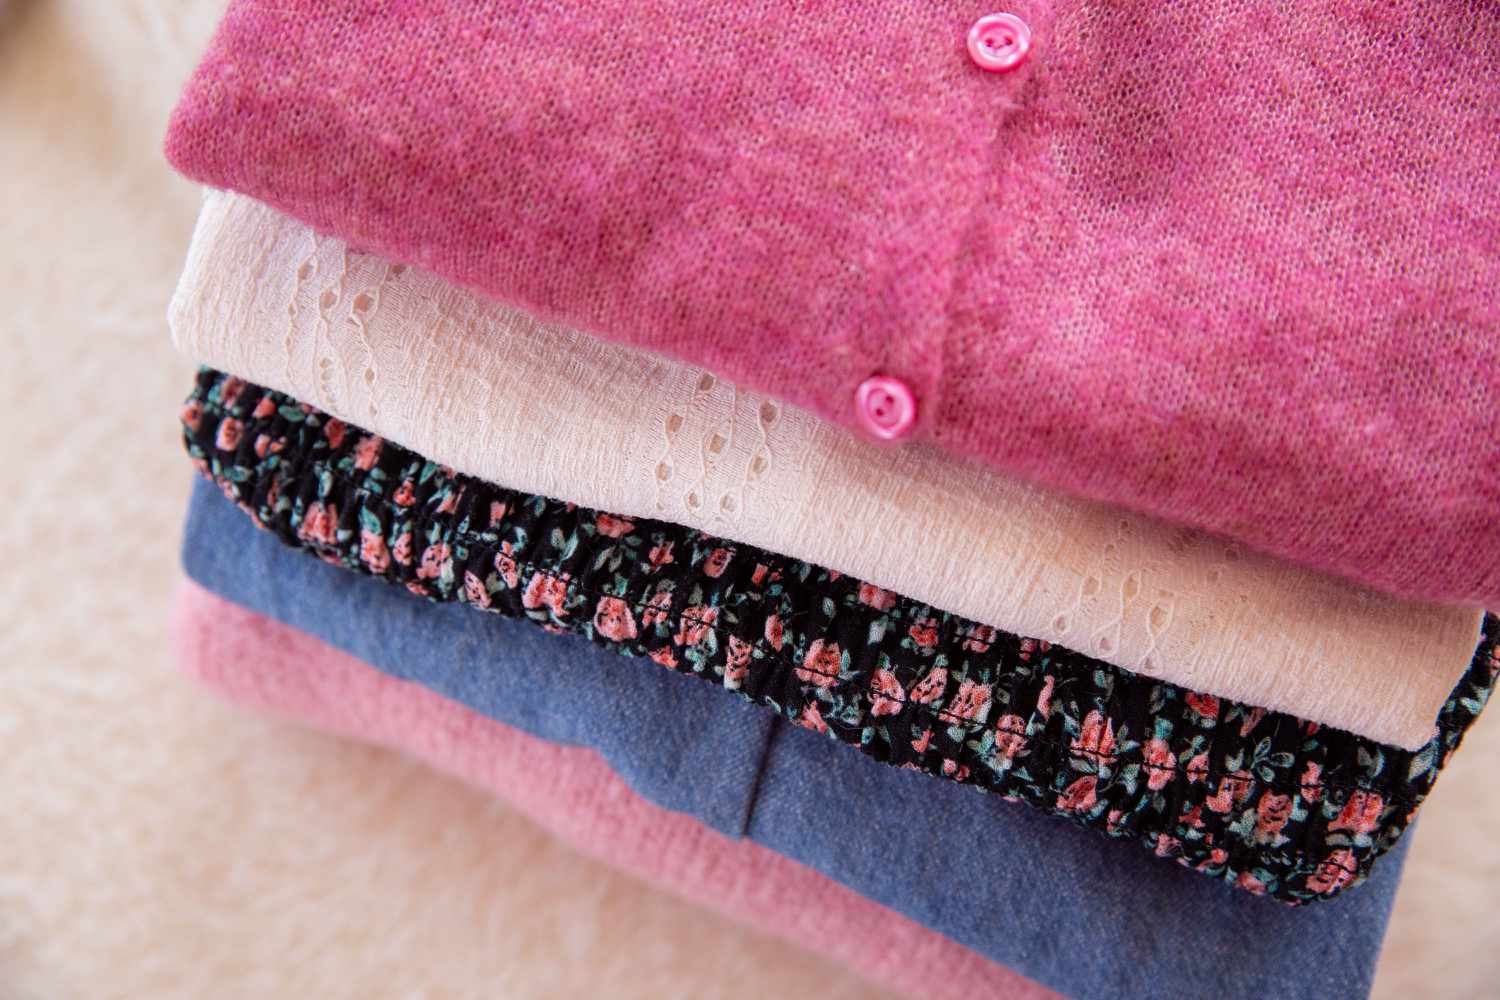 Çukurova 3. Tekstil ve Hazır Giyim Fuarı 1 Şubat'ta Kapılarını Açacak